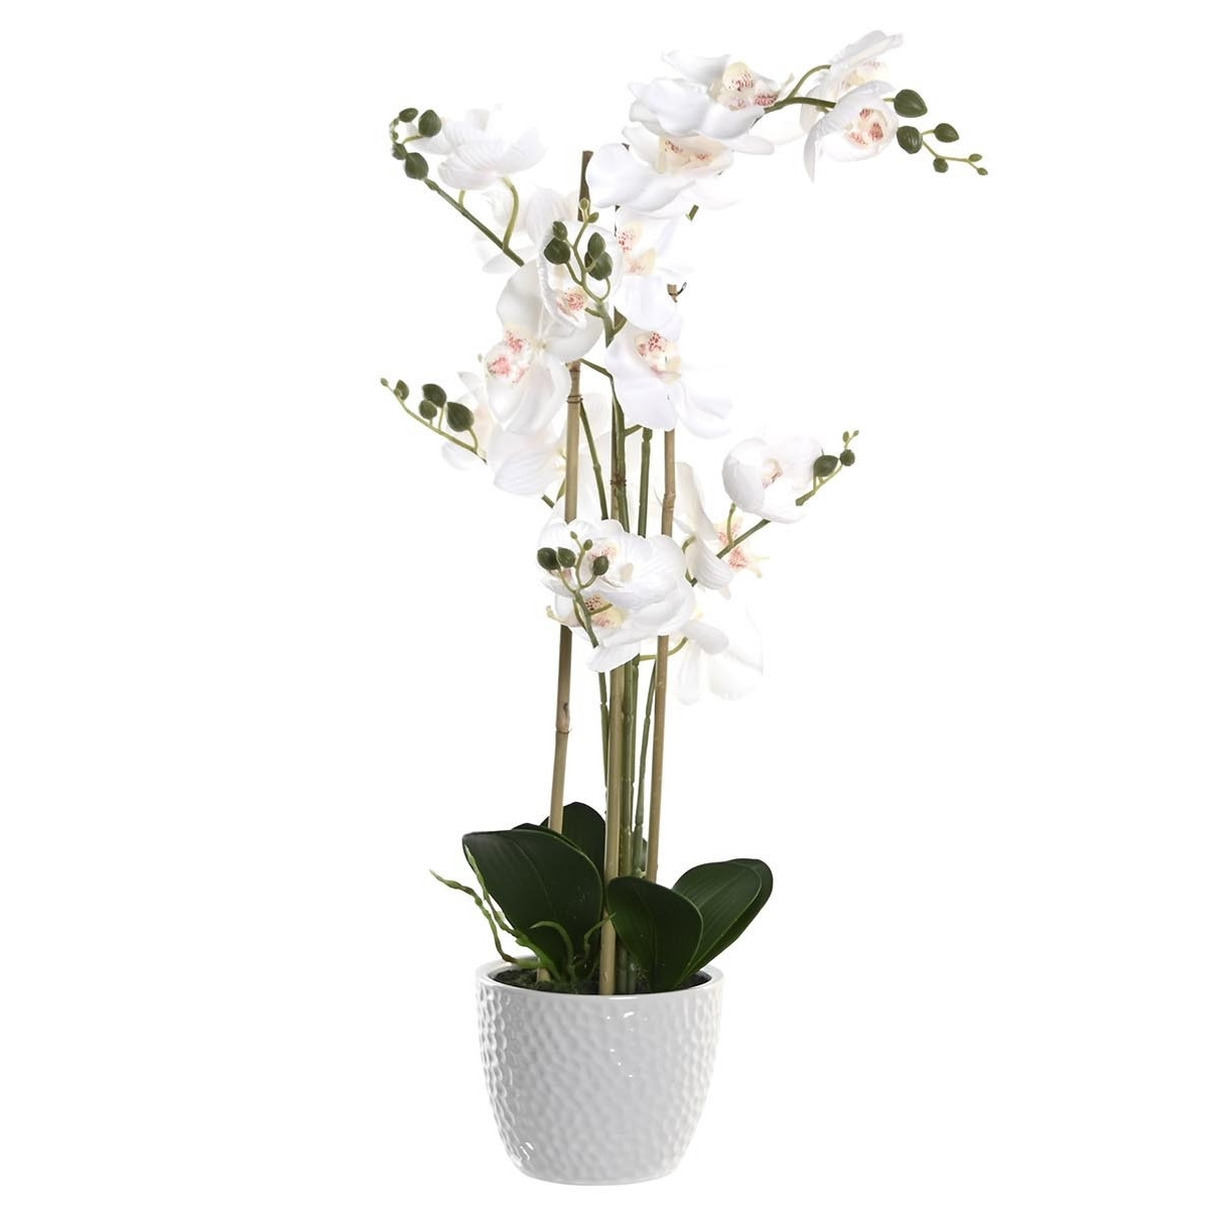 Orchidee bloemen kunstplant in witte bloempot witte bloemen H77 cm